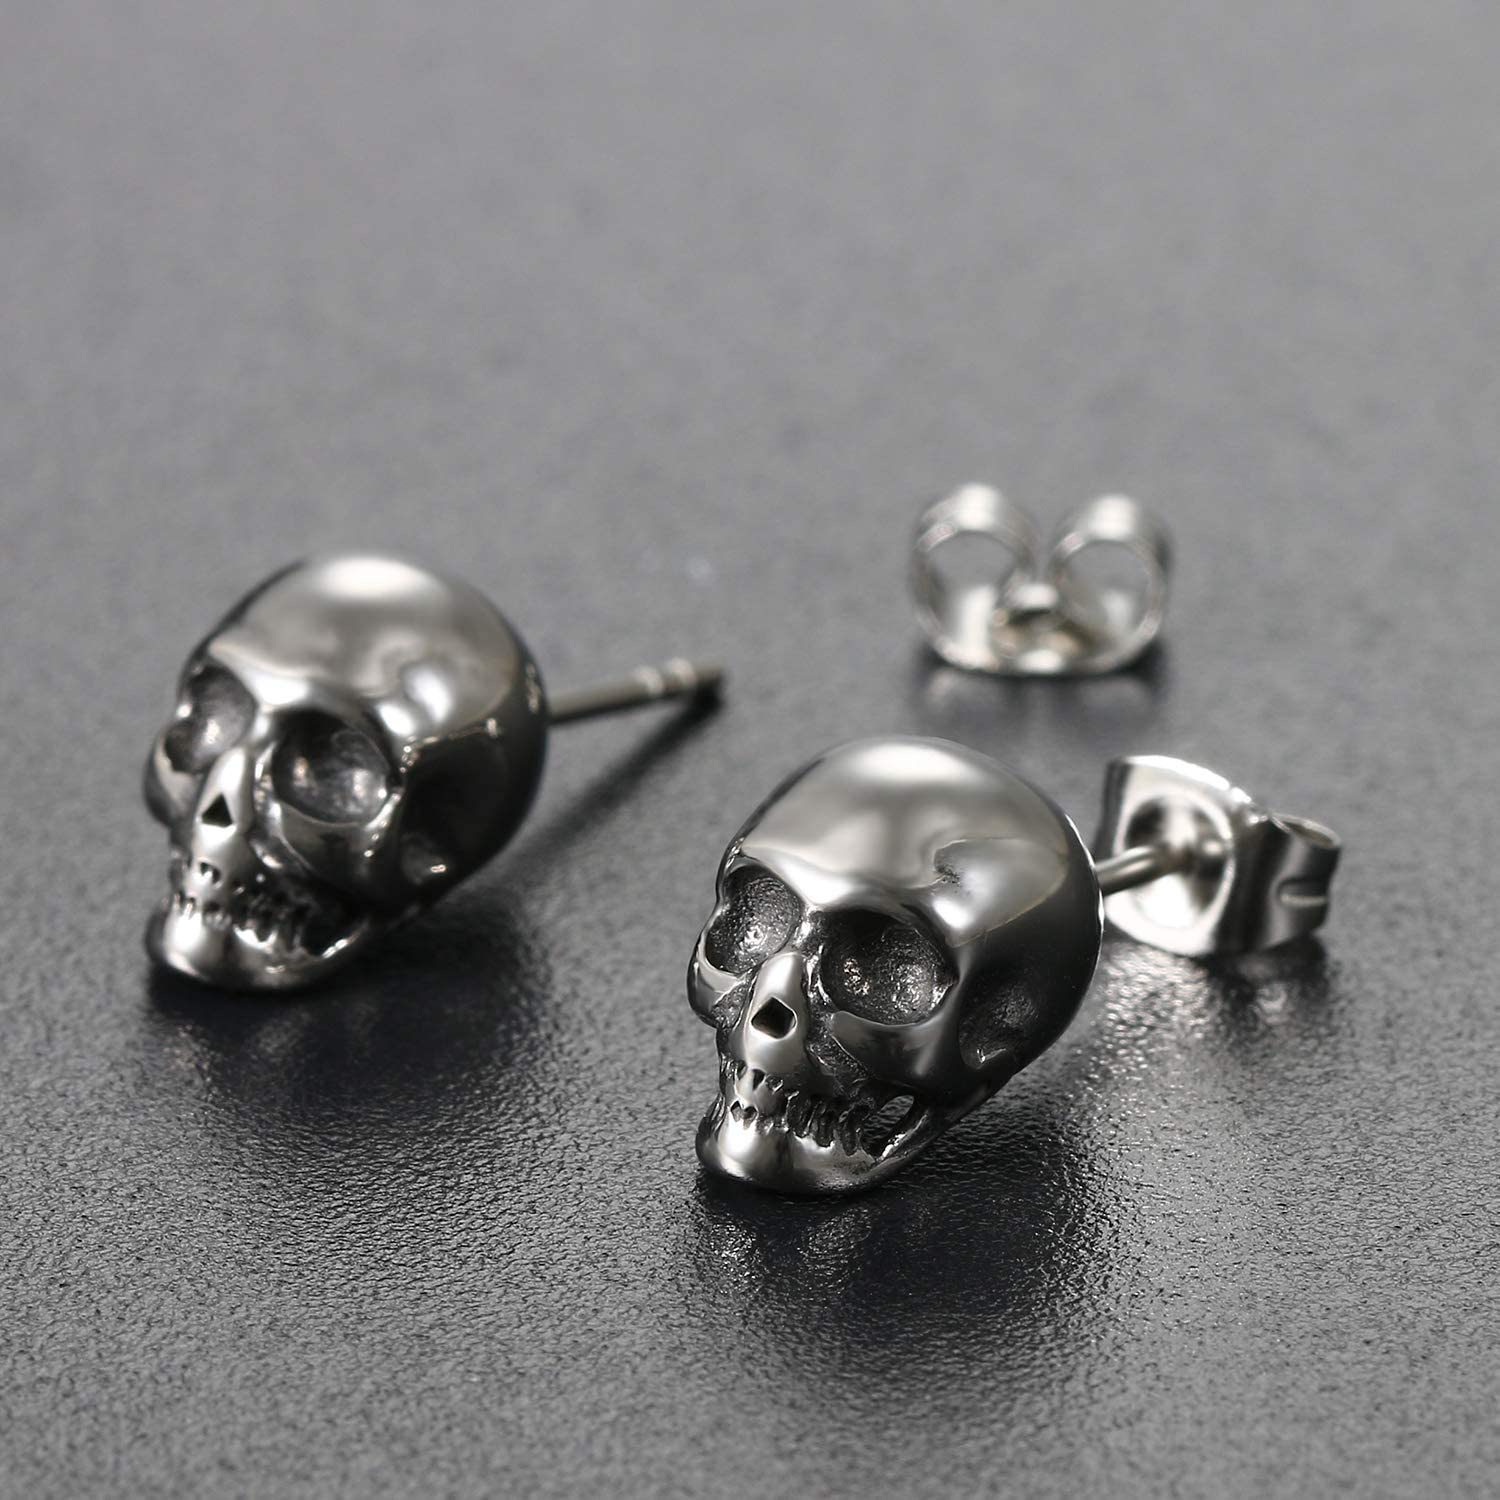 PUNK Stainless Steel Gothic Skull Stud Earrings 